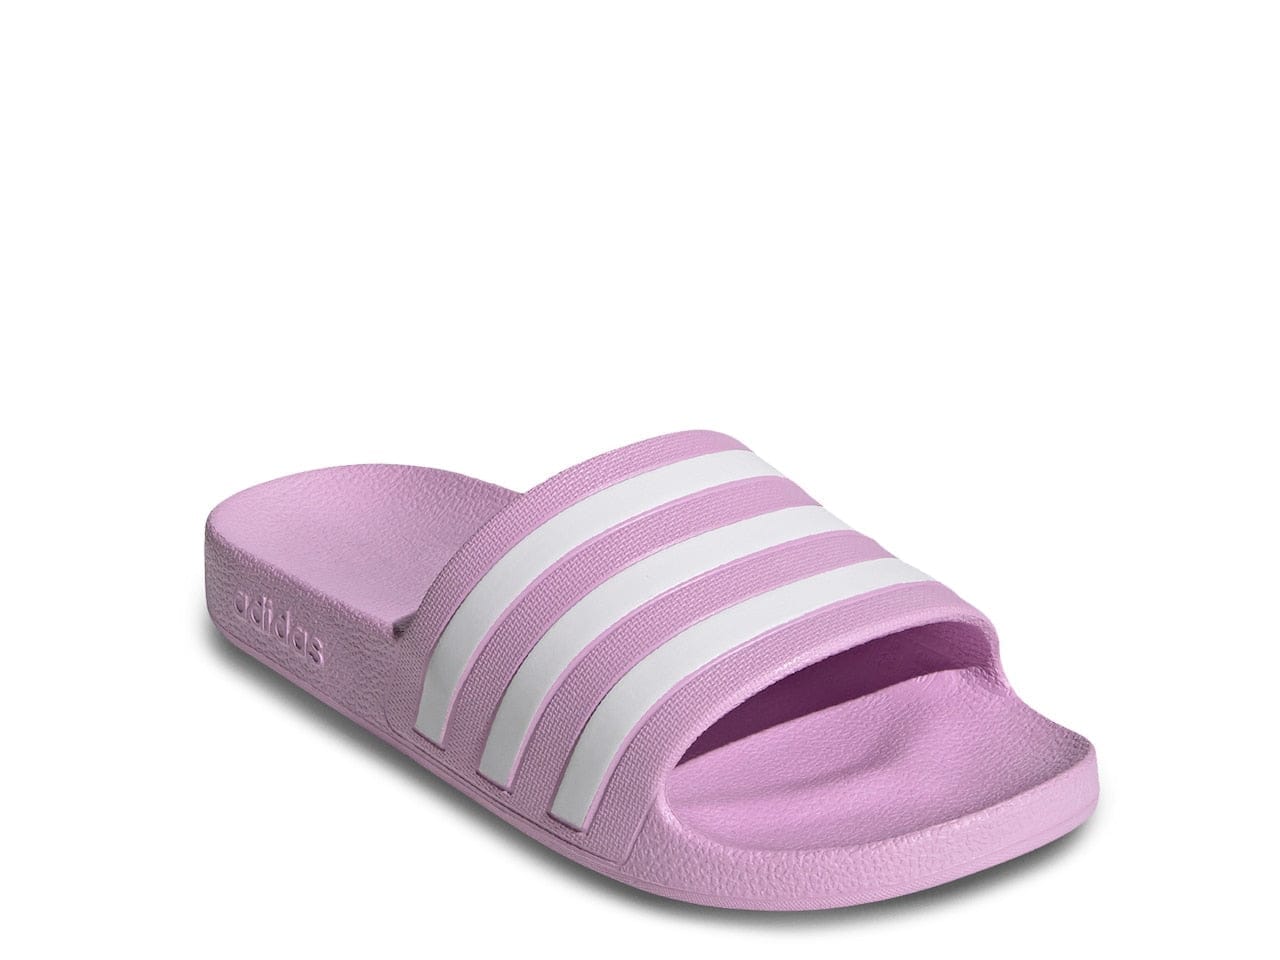 Swarovski Adidas Adilette Womens Slides Shoes by BlingxAddict | BlingxAddict